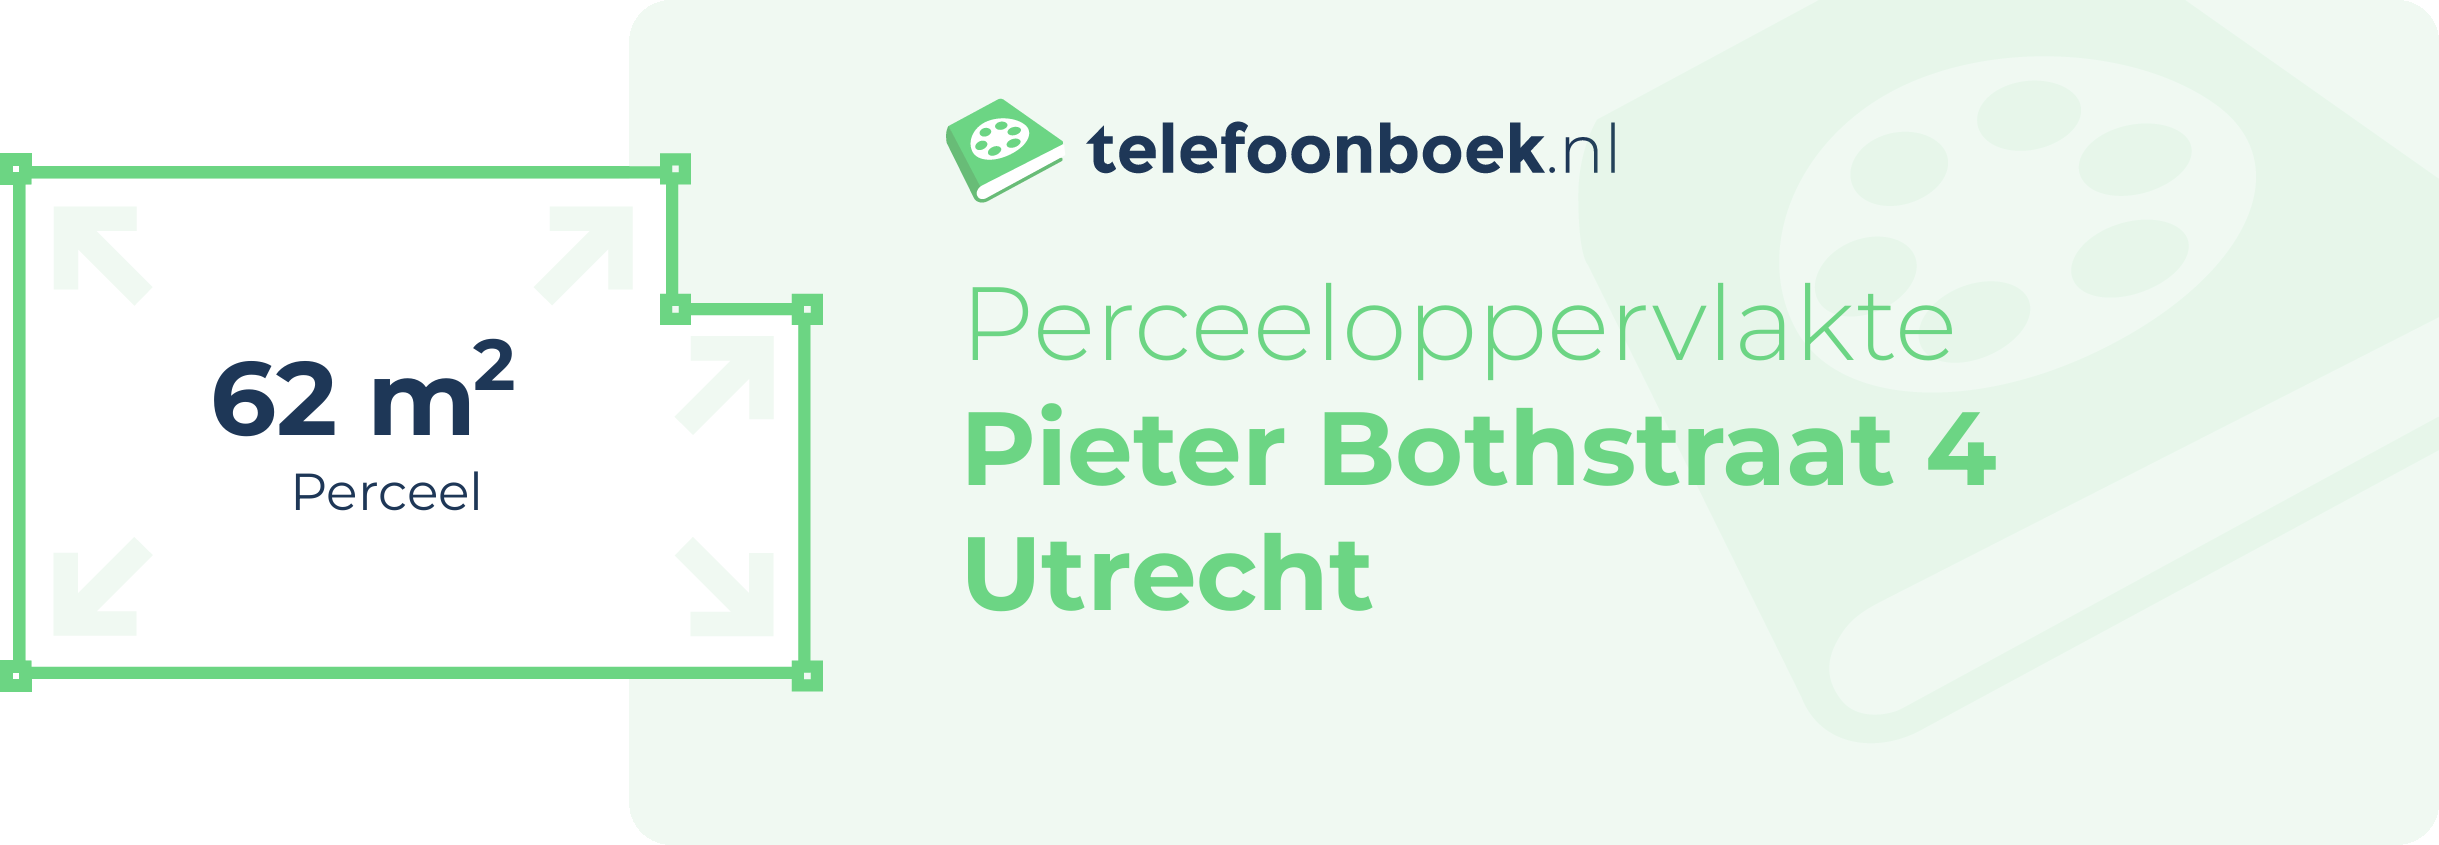 Perceeloppervlakte Pieter Bothstraat 4 Utrecht